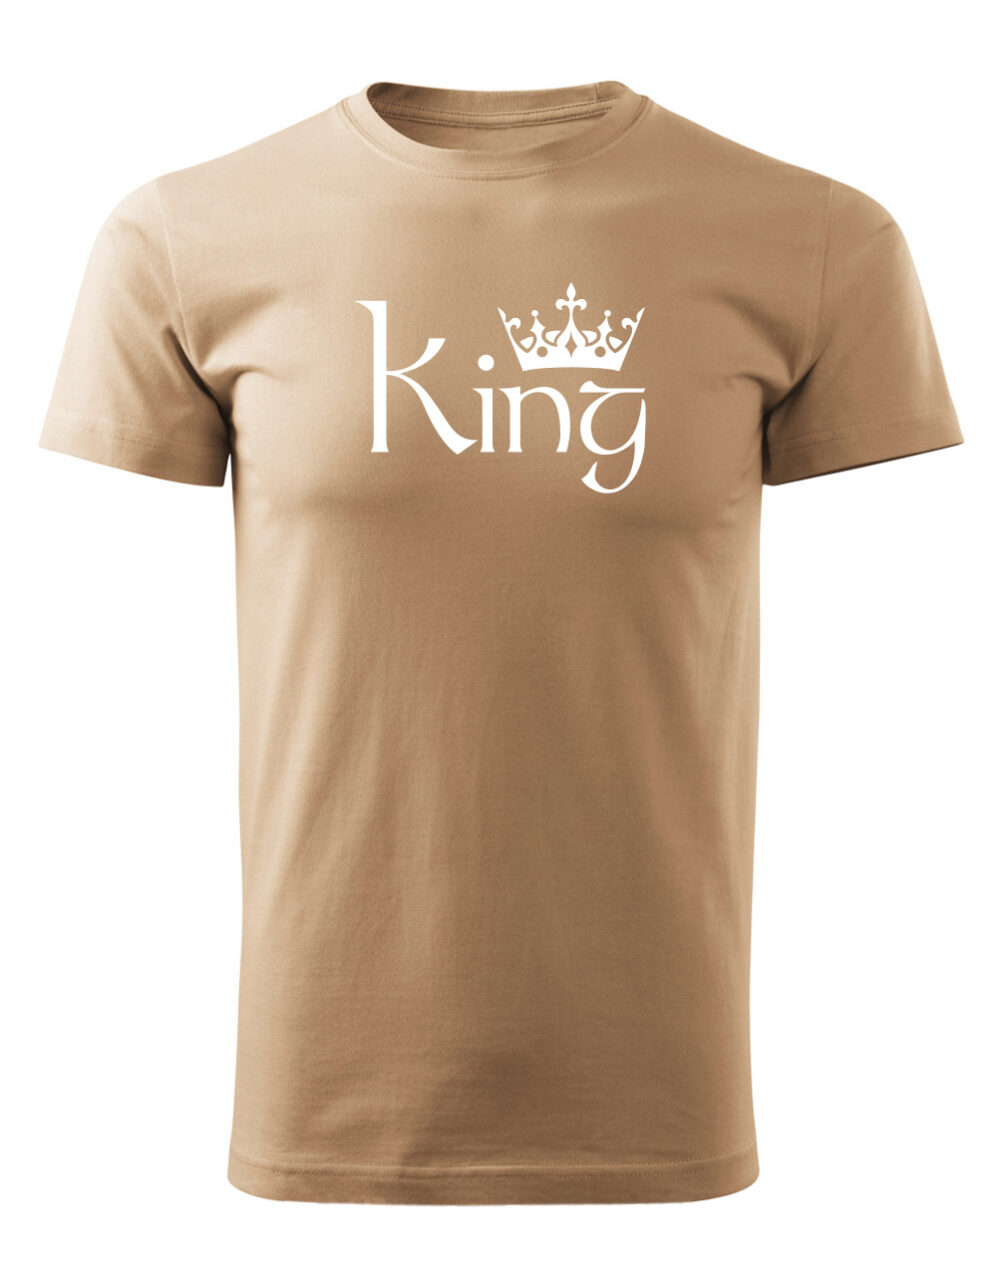 Pásnké tričko s potiskem King písková